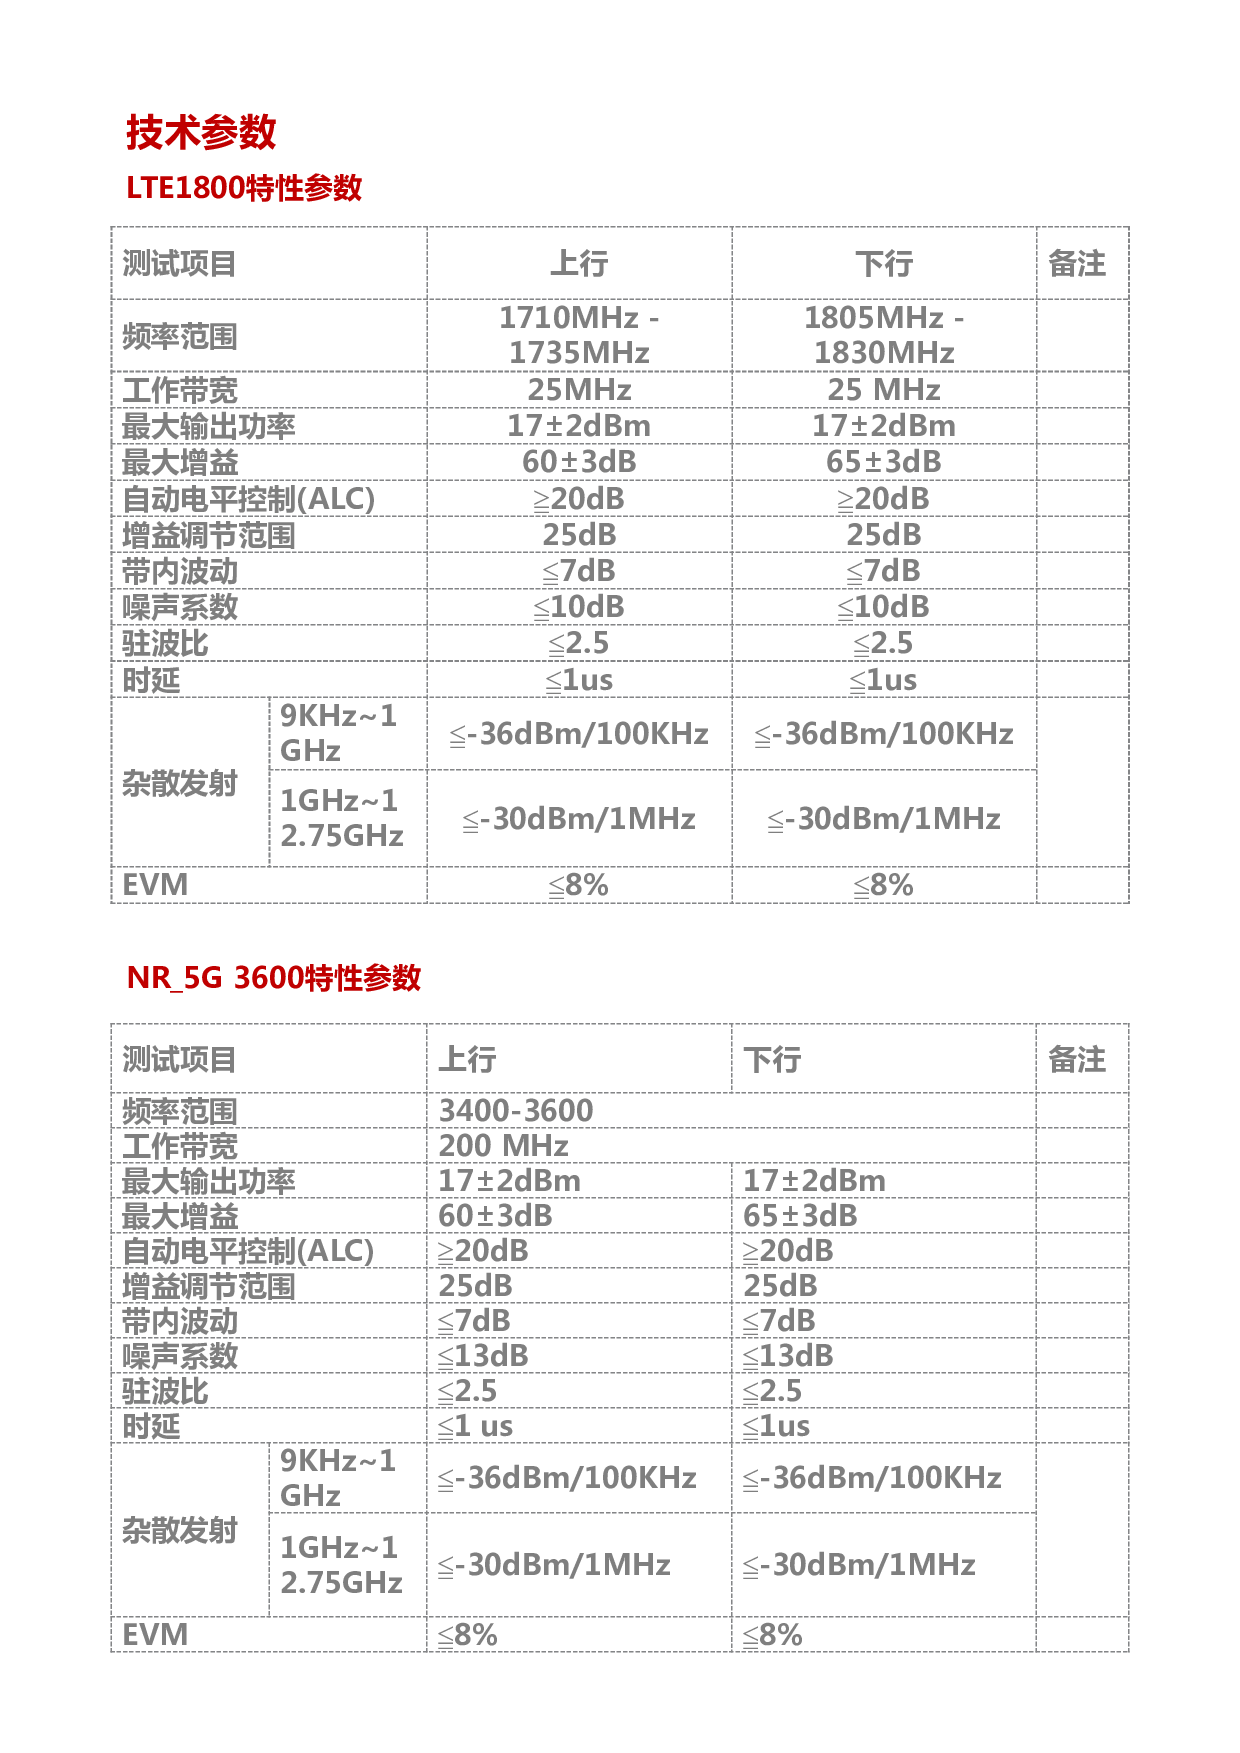 5G微型直放站（中国联通、中国电信）图片